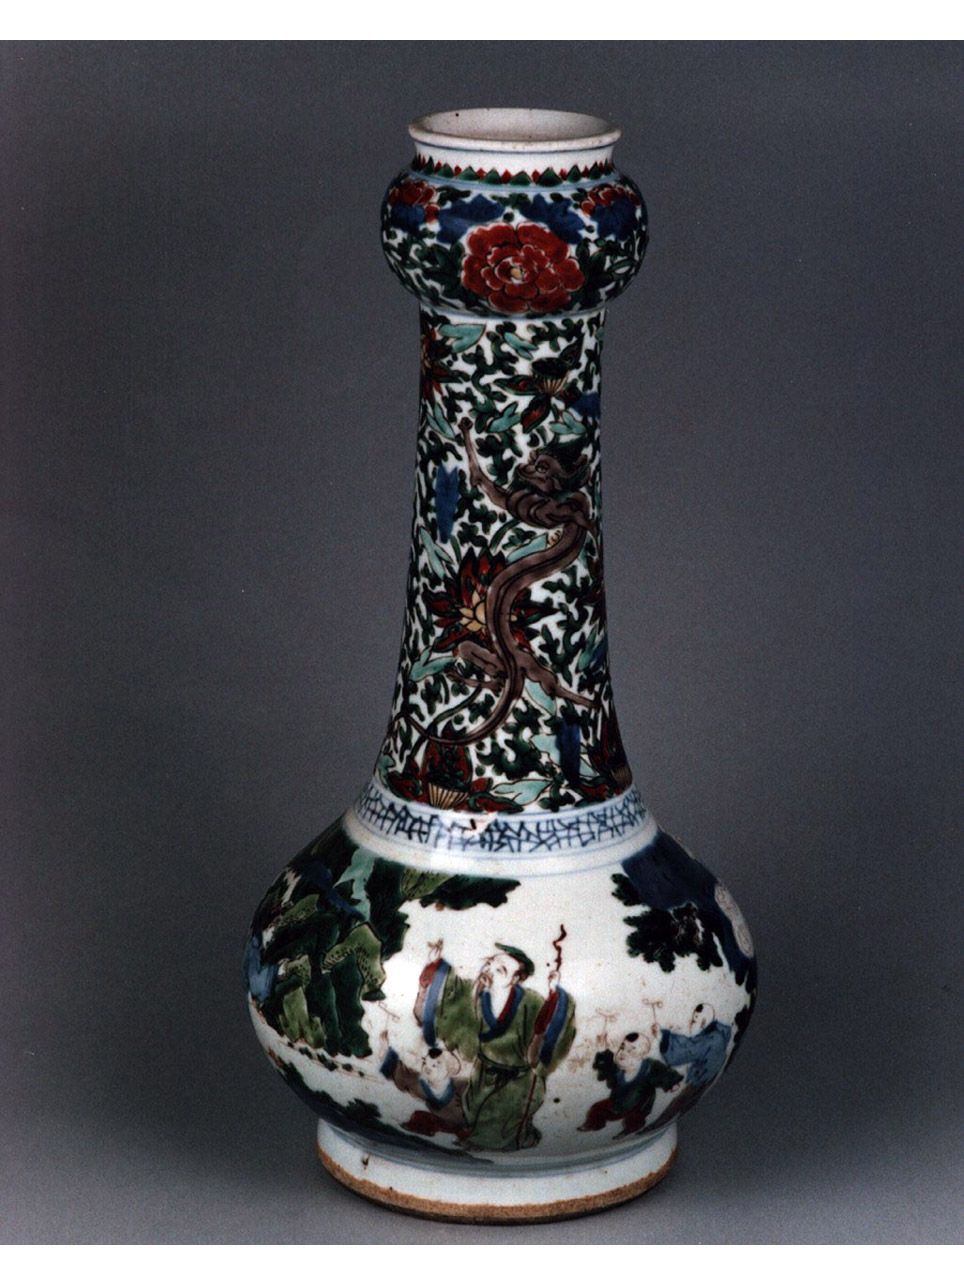 personaggi e scene da cicli letterari/ motivi decorativi floreali (vaso) - manifattura cinese (sec. XVII)